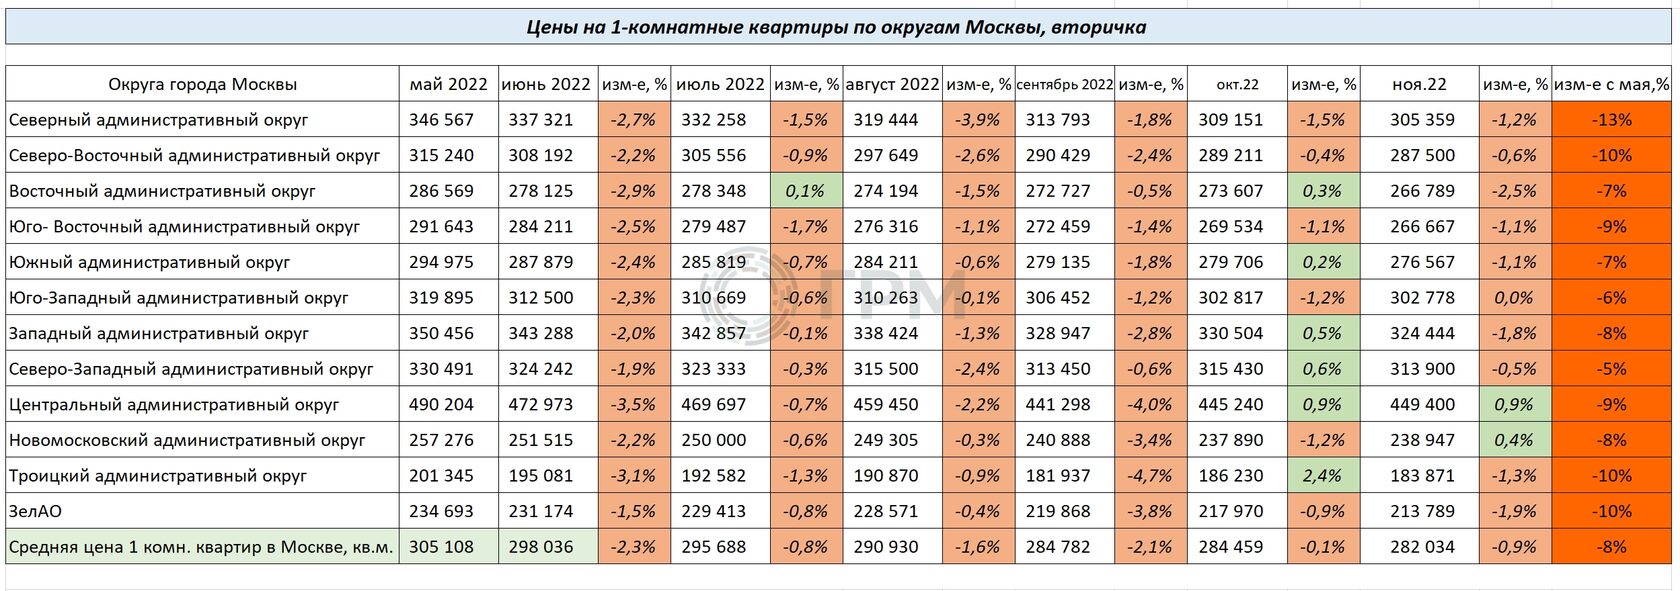 Изменение цен на 1-комнатные квартиры по округам Москвы с мая по ноябрь 2022 года